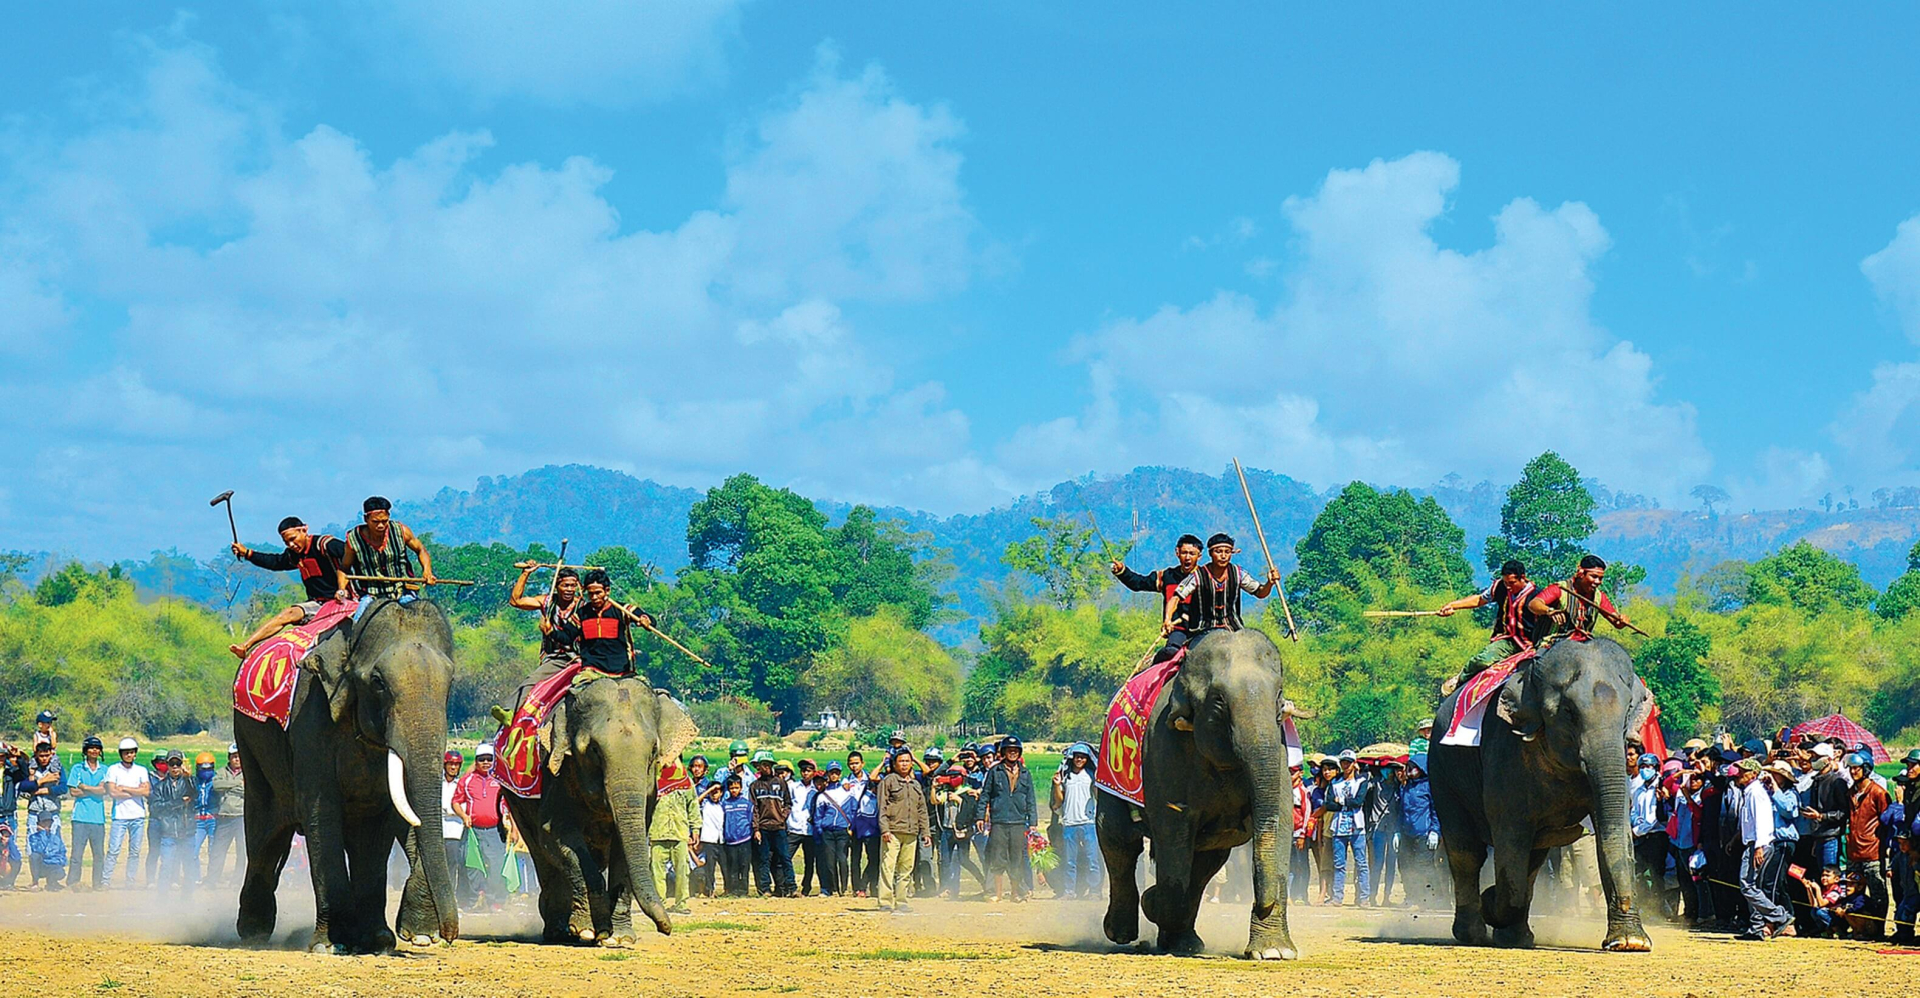 Đua voi đã trở thành lễ hội truyền thống của người dân Buôn Đôn